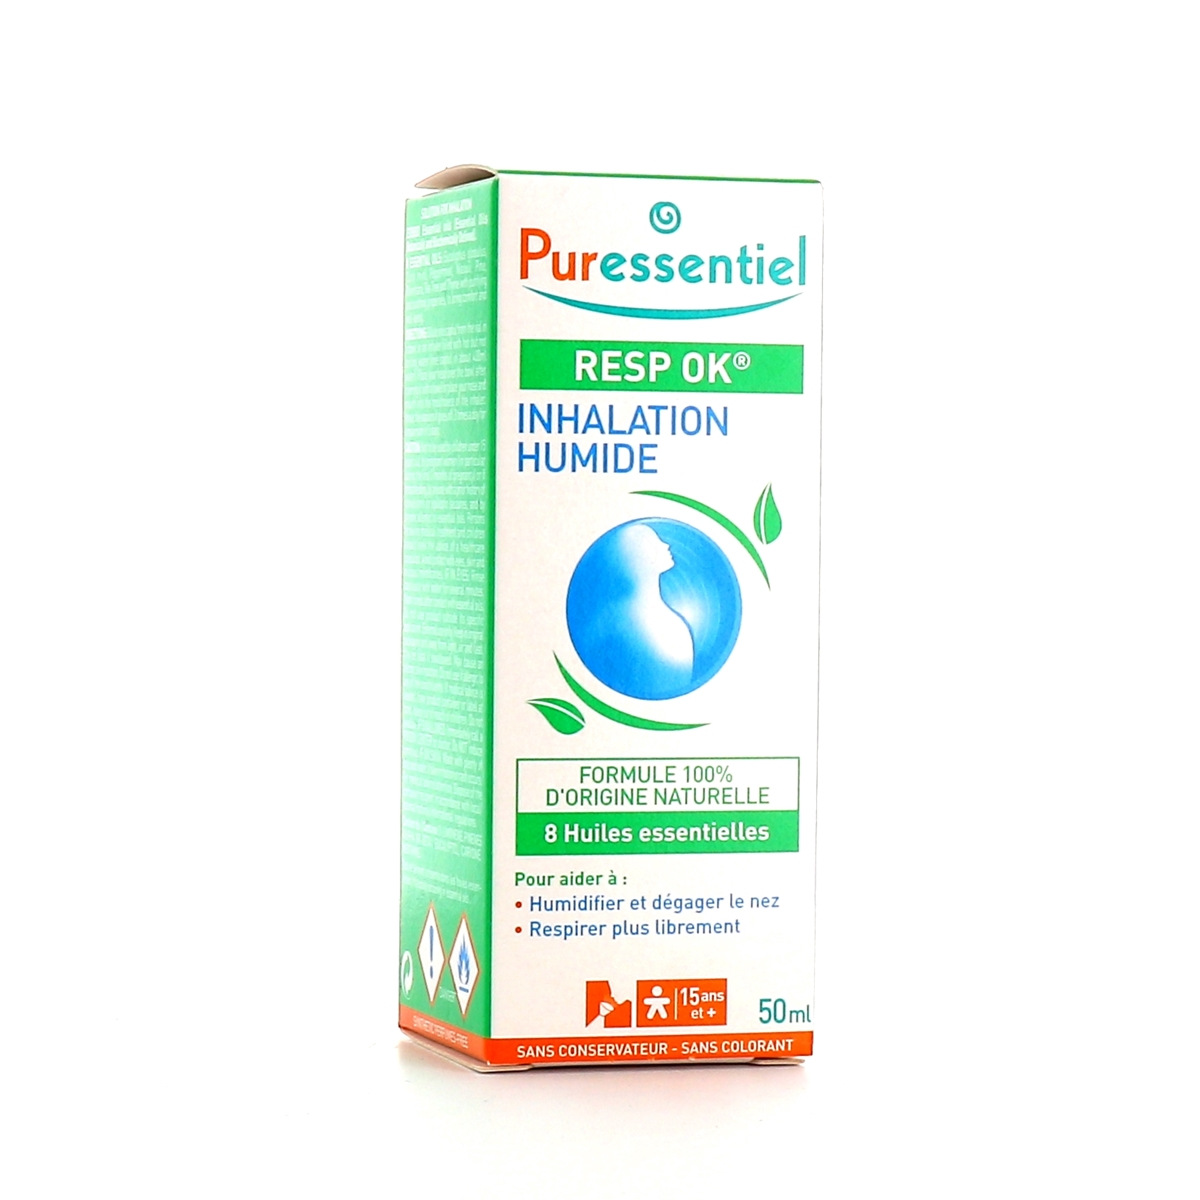 Puressentiel - Resp OK Inhalation Humide - 50 ml